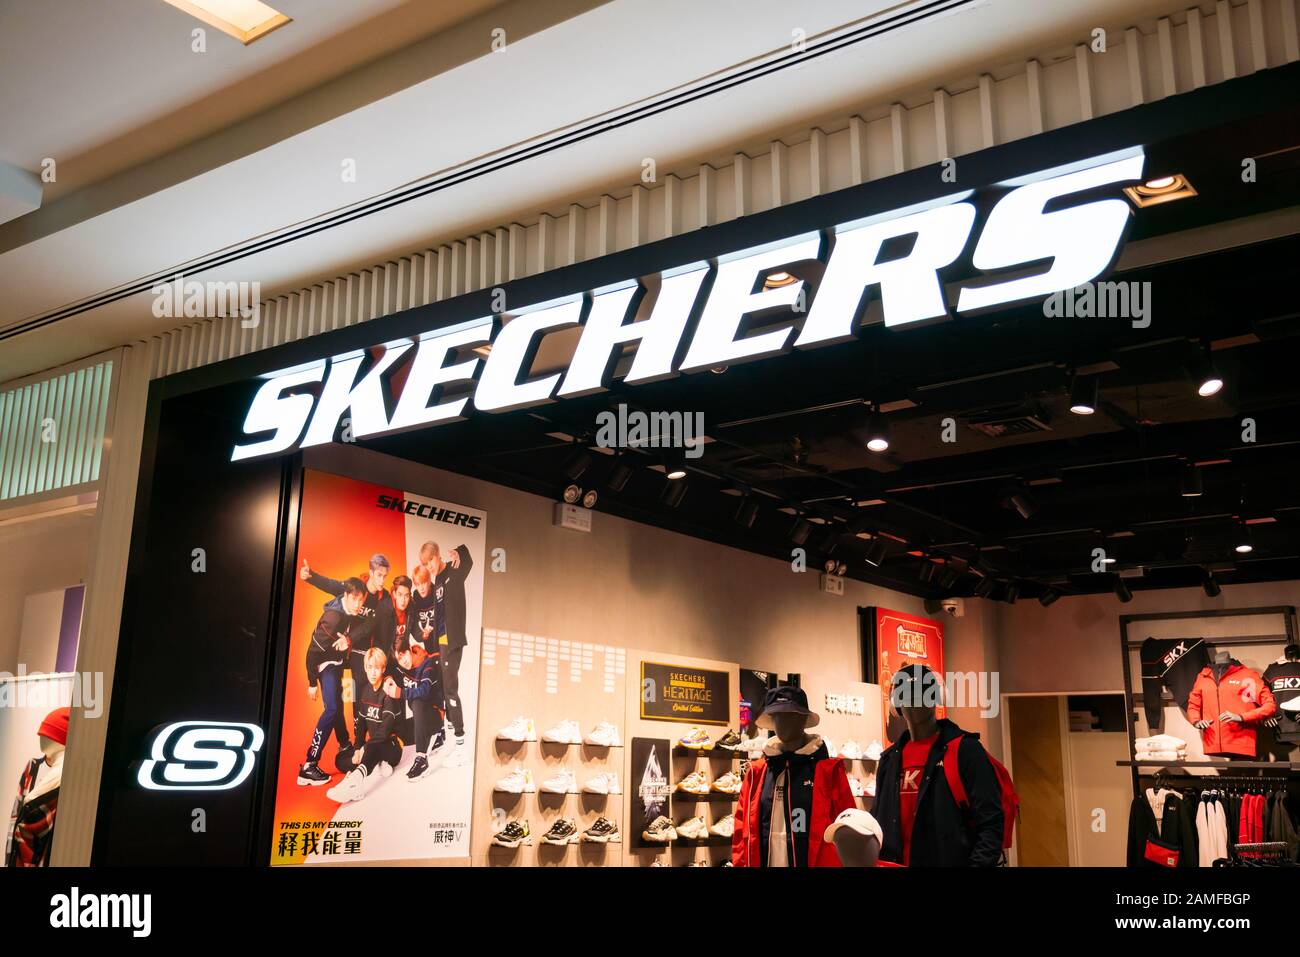 skechers outlet shop online